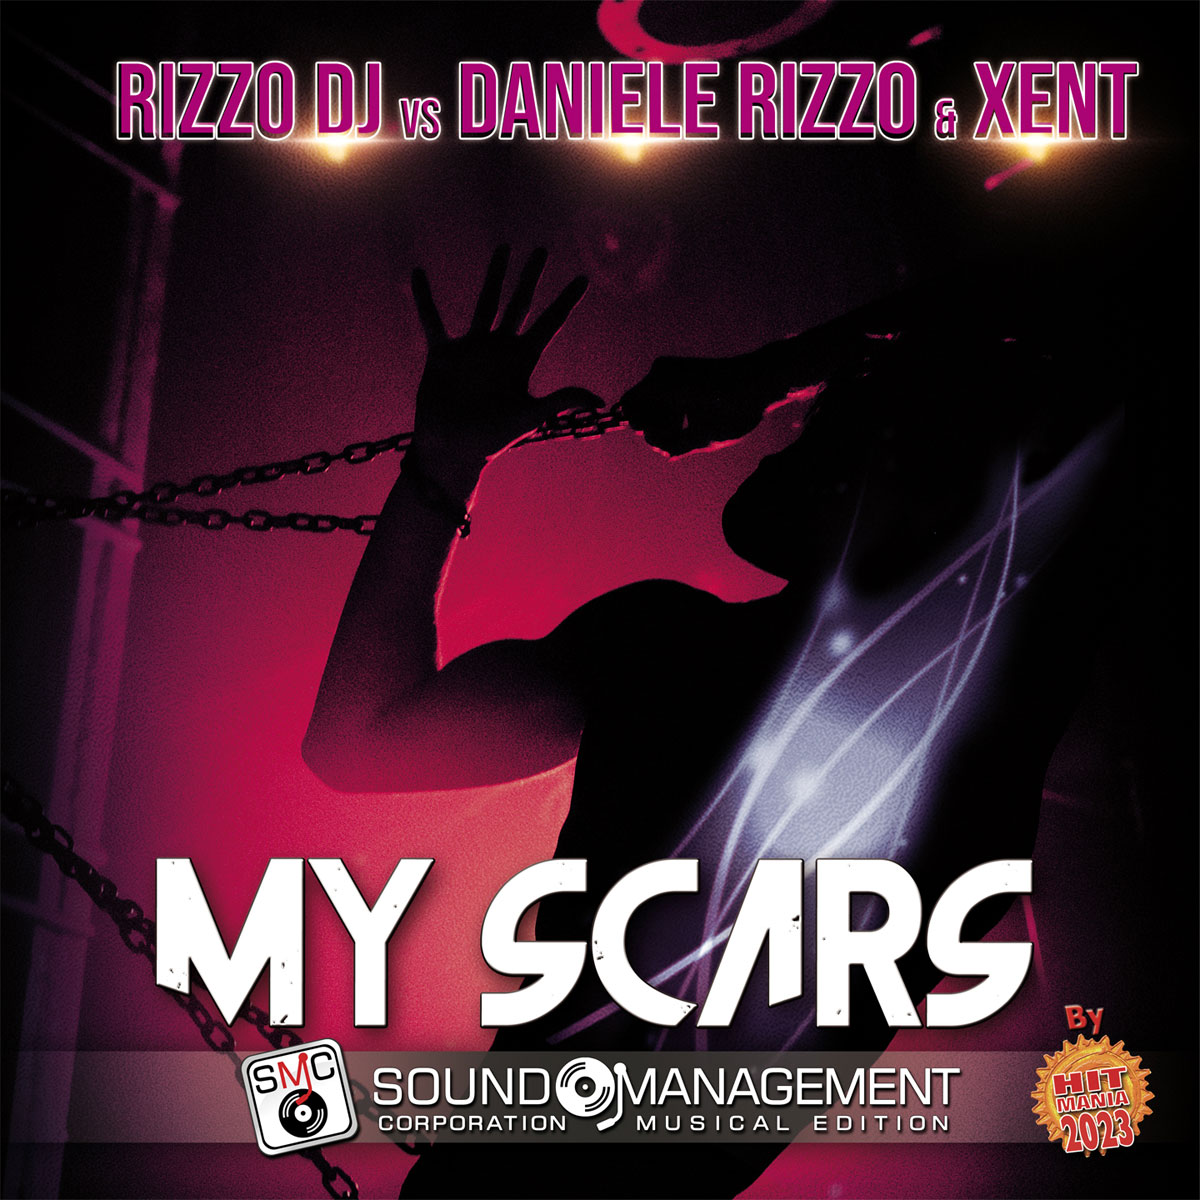 Foto 1 - “My Scars” è il nuovo singolo di Rizzo Dj vs Daniele Rizzo & Xent